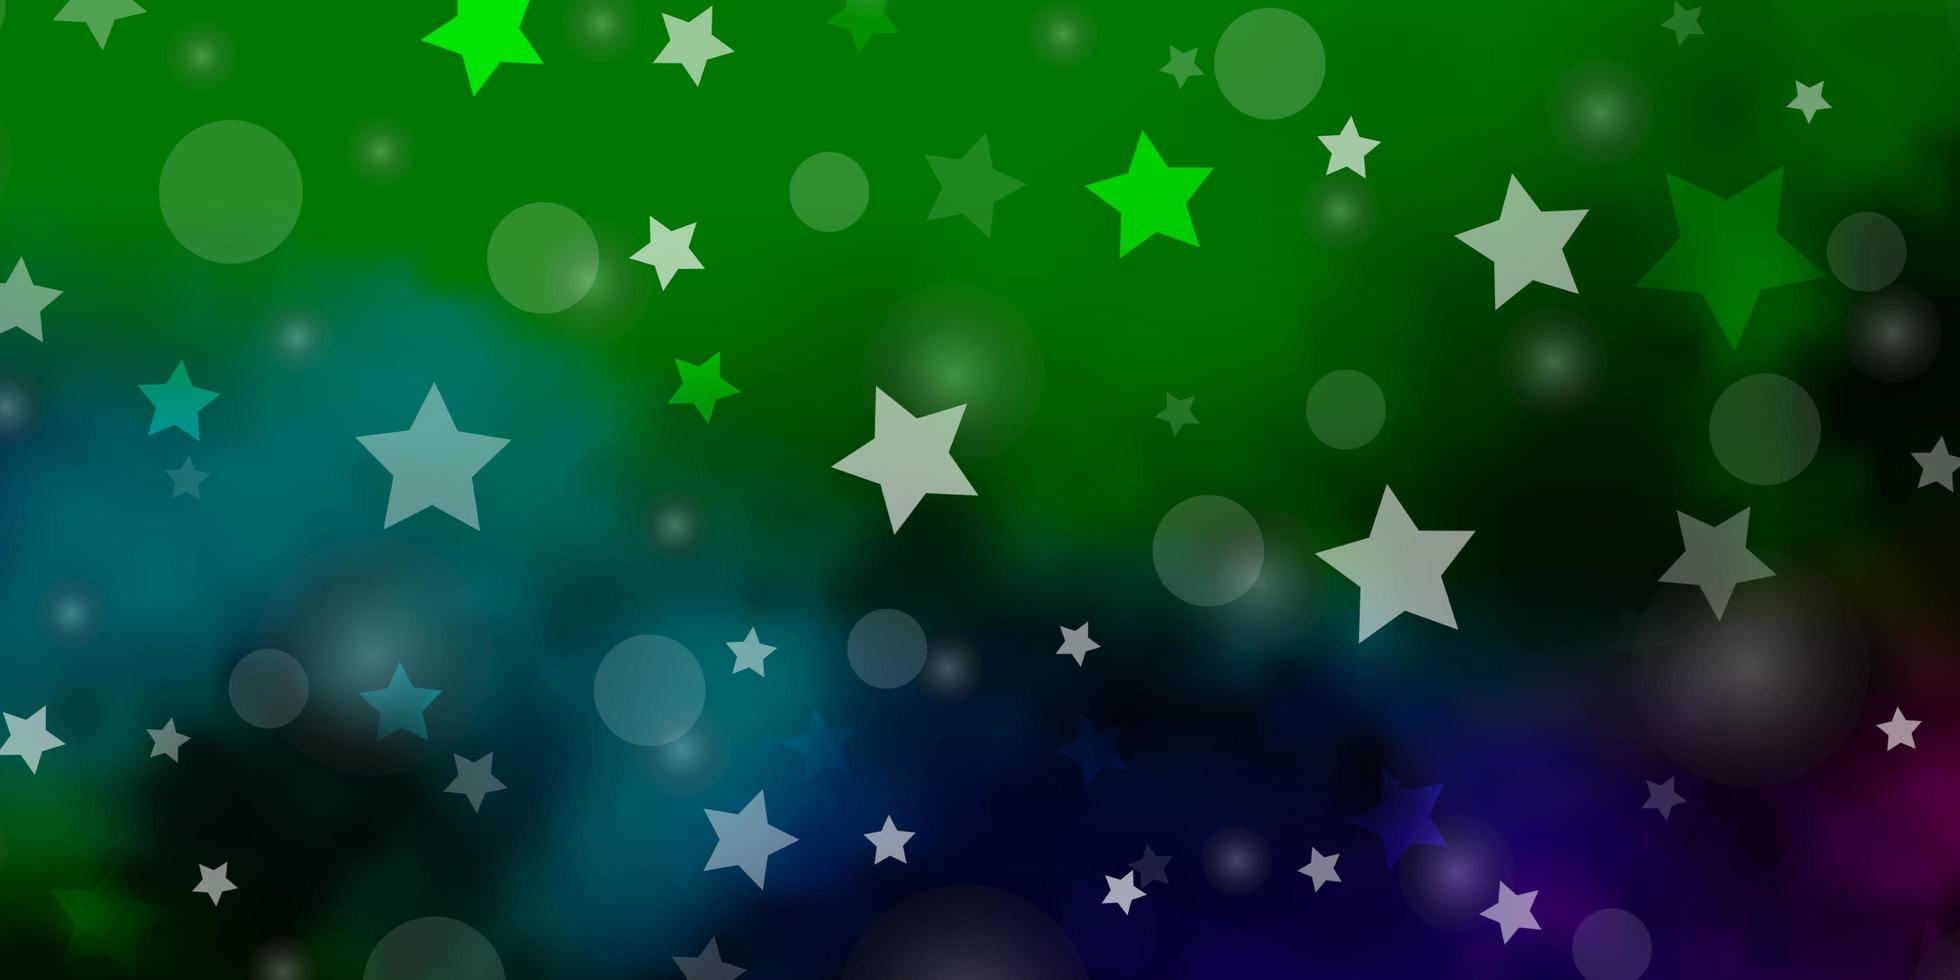 fond de vecteur multicolore sombre avec des cercles étoiles illustration abstraite avec motif étoiles de taches colorées pour la conception de papiers peints en tissu